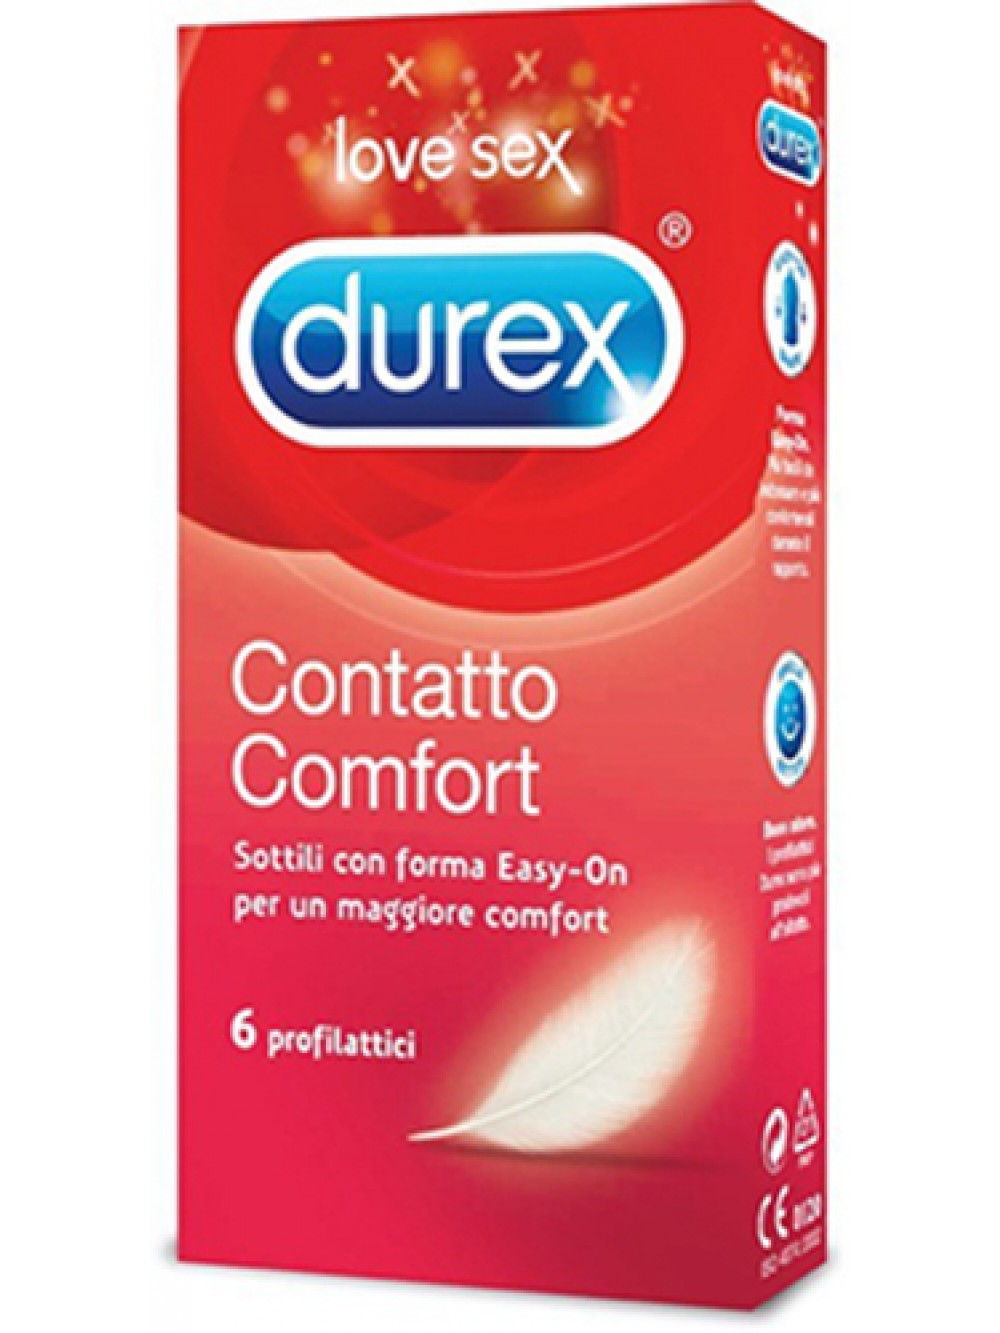 Durex Contatto Comfort 6 preservativi 5038483444993